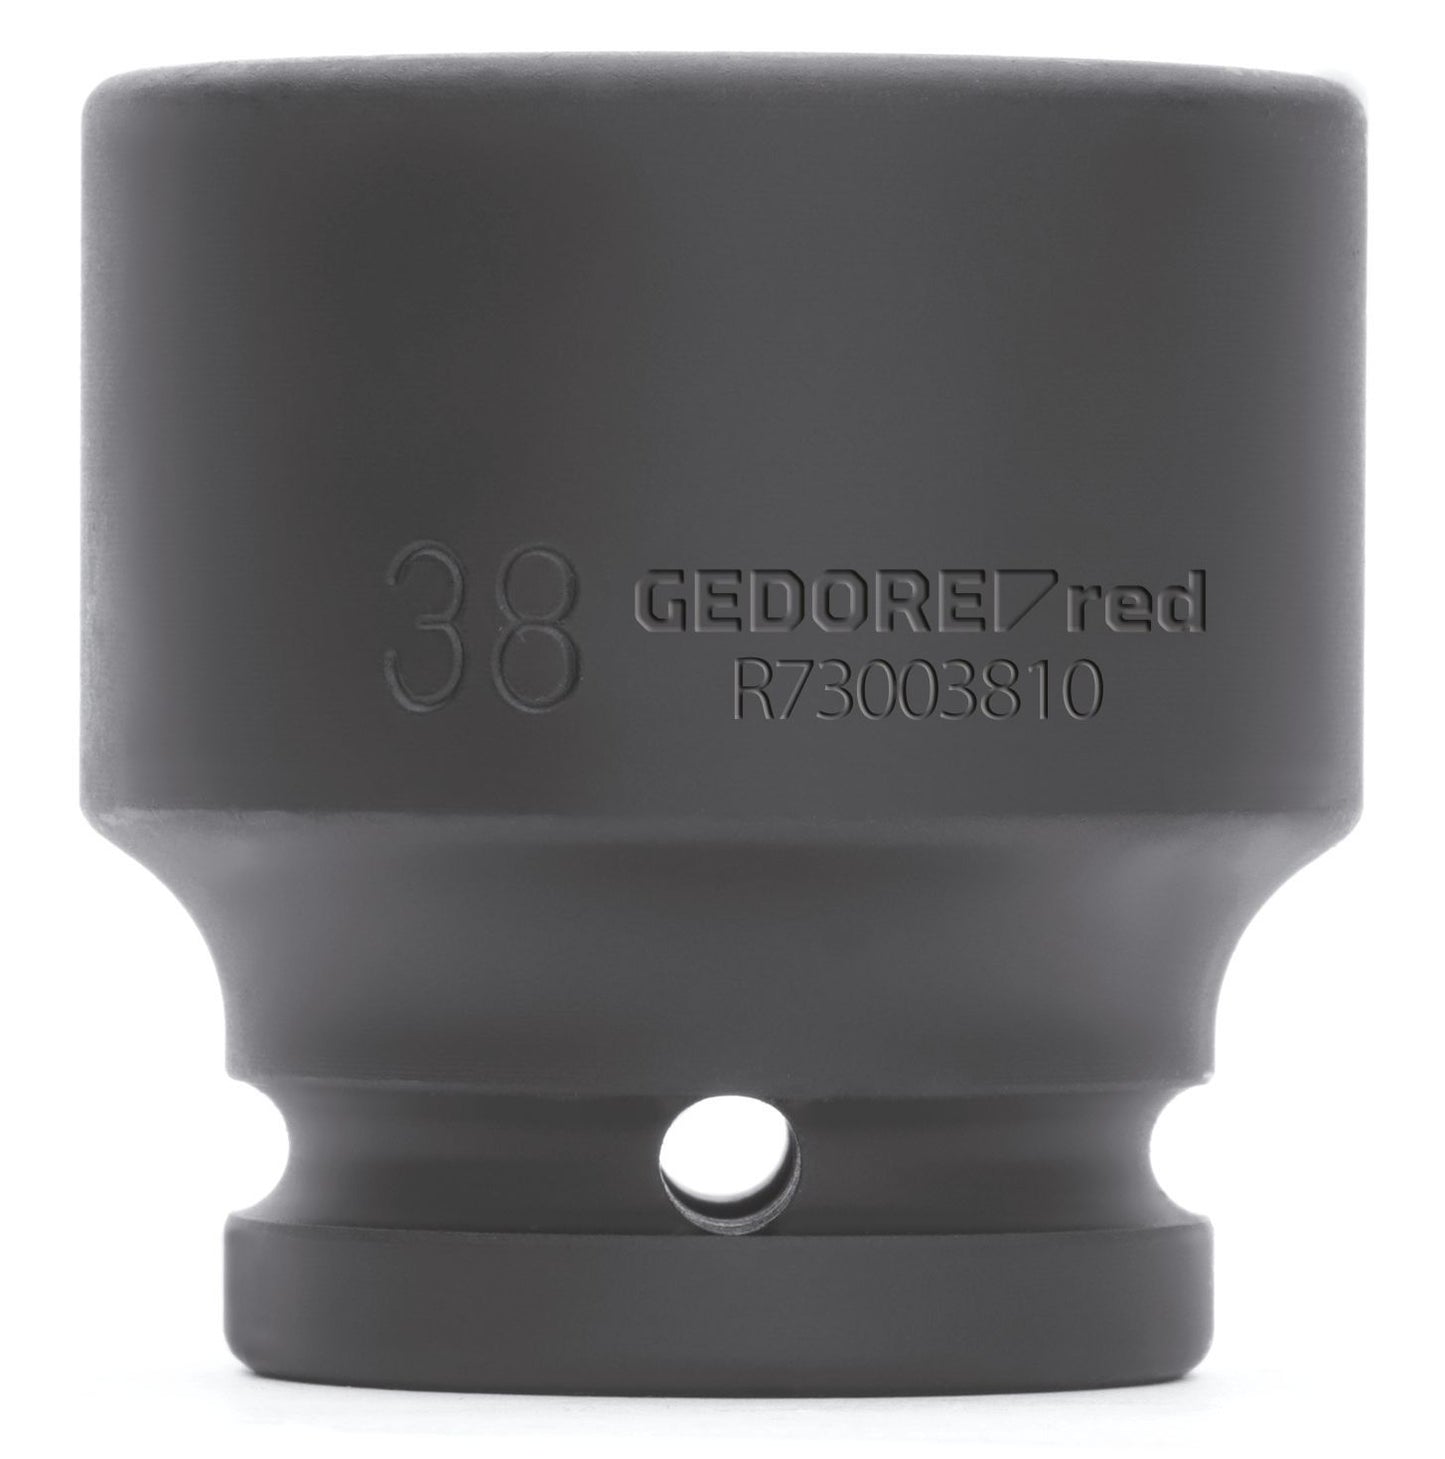 GEDORE red R73003010 - Vaso de impacto 3/4", hexagonal, 30 mm L=54 mm (3300601)